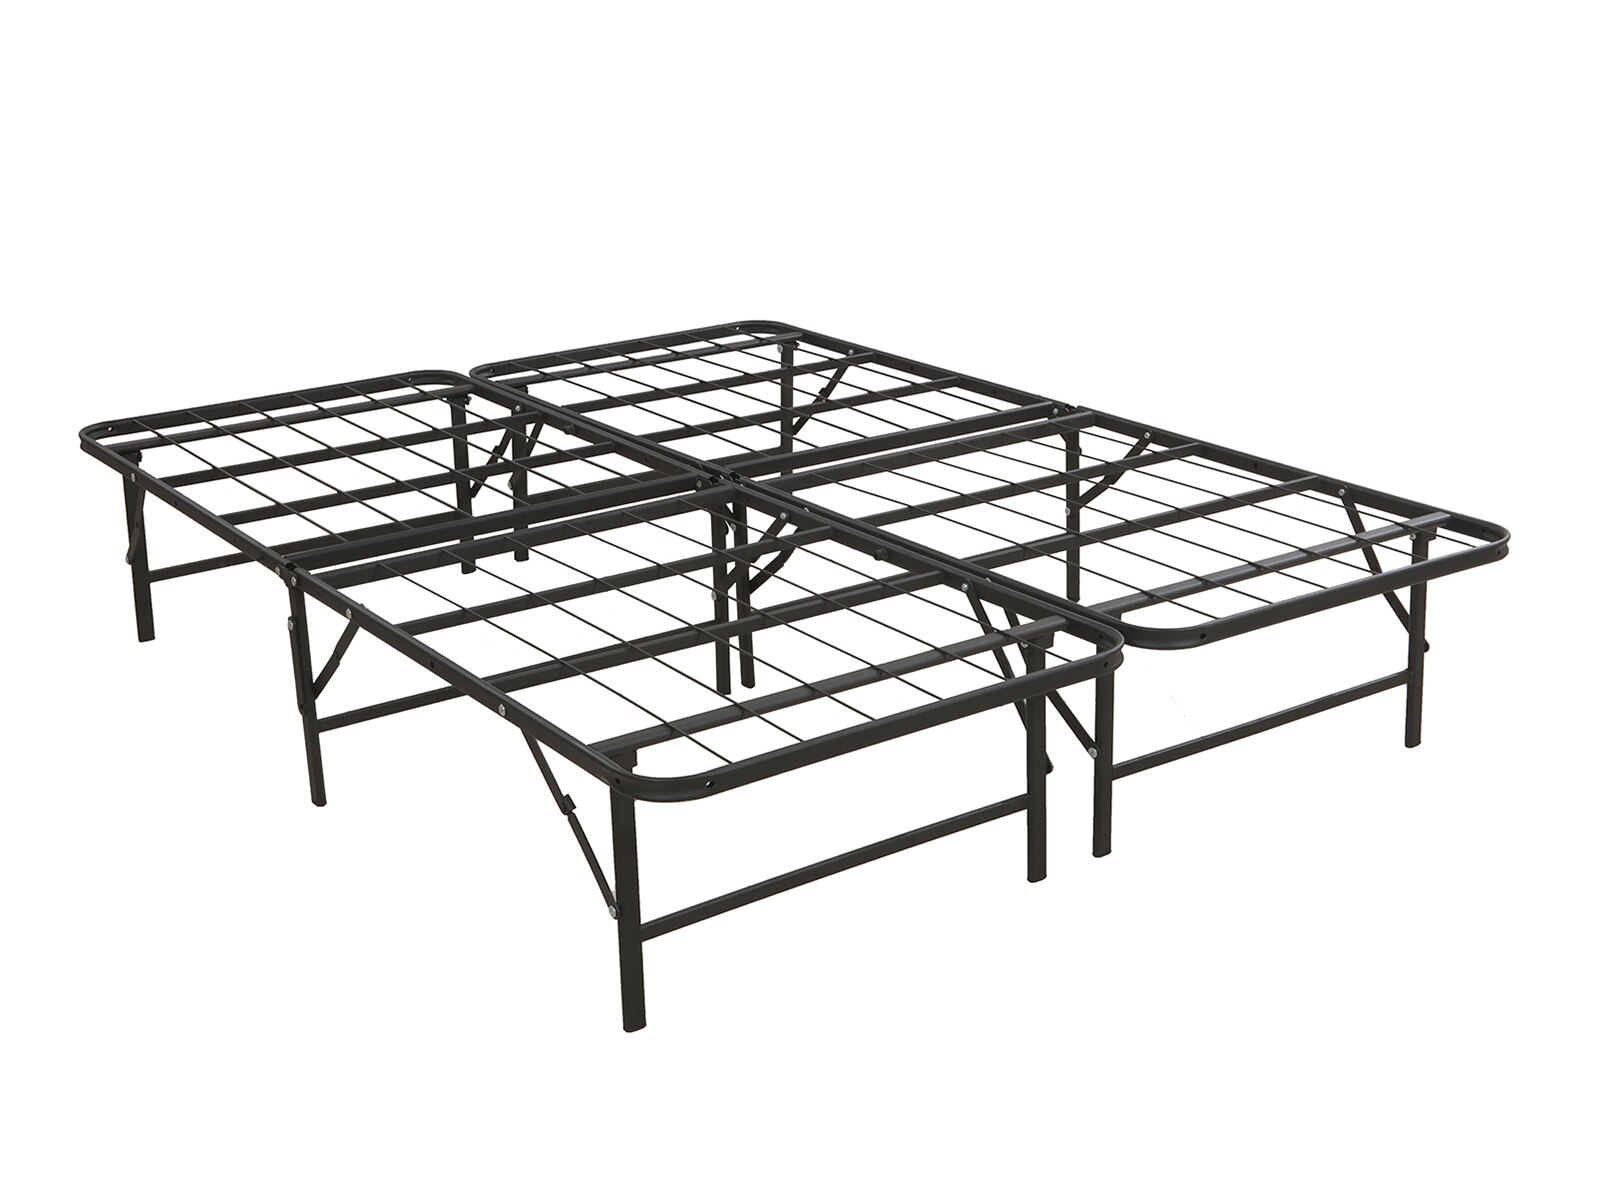 mattress firm full deluxe raised metal platform frame